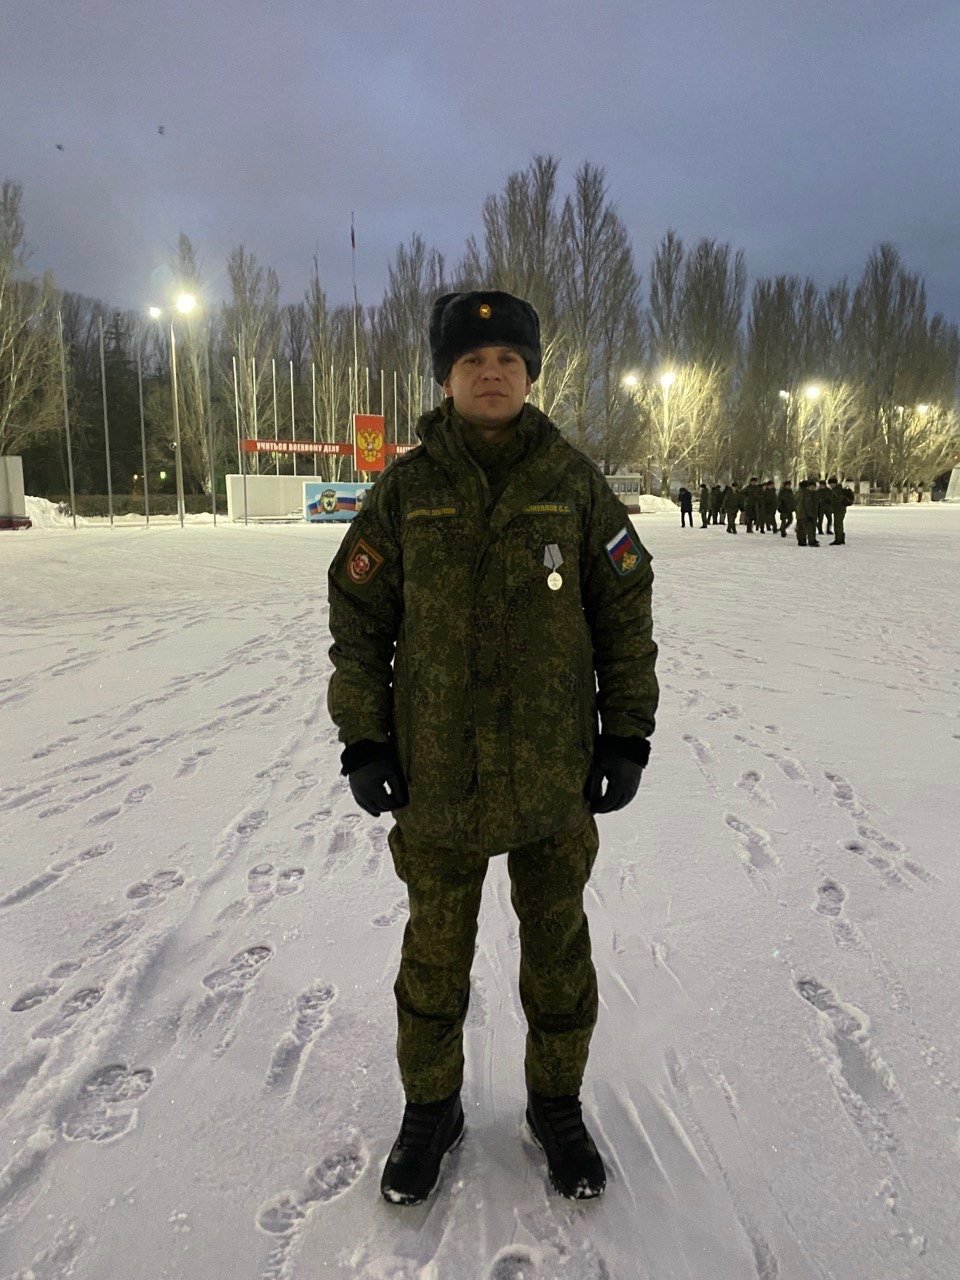 Офіцери 3-ї окремої бригади спеціального призначення російських окупаційних військ: OSINT розслідування